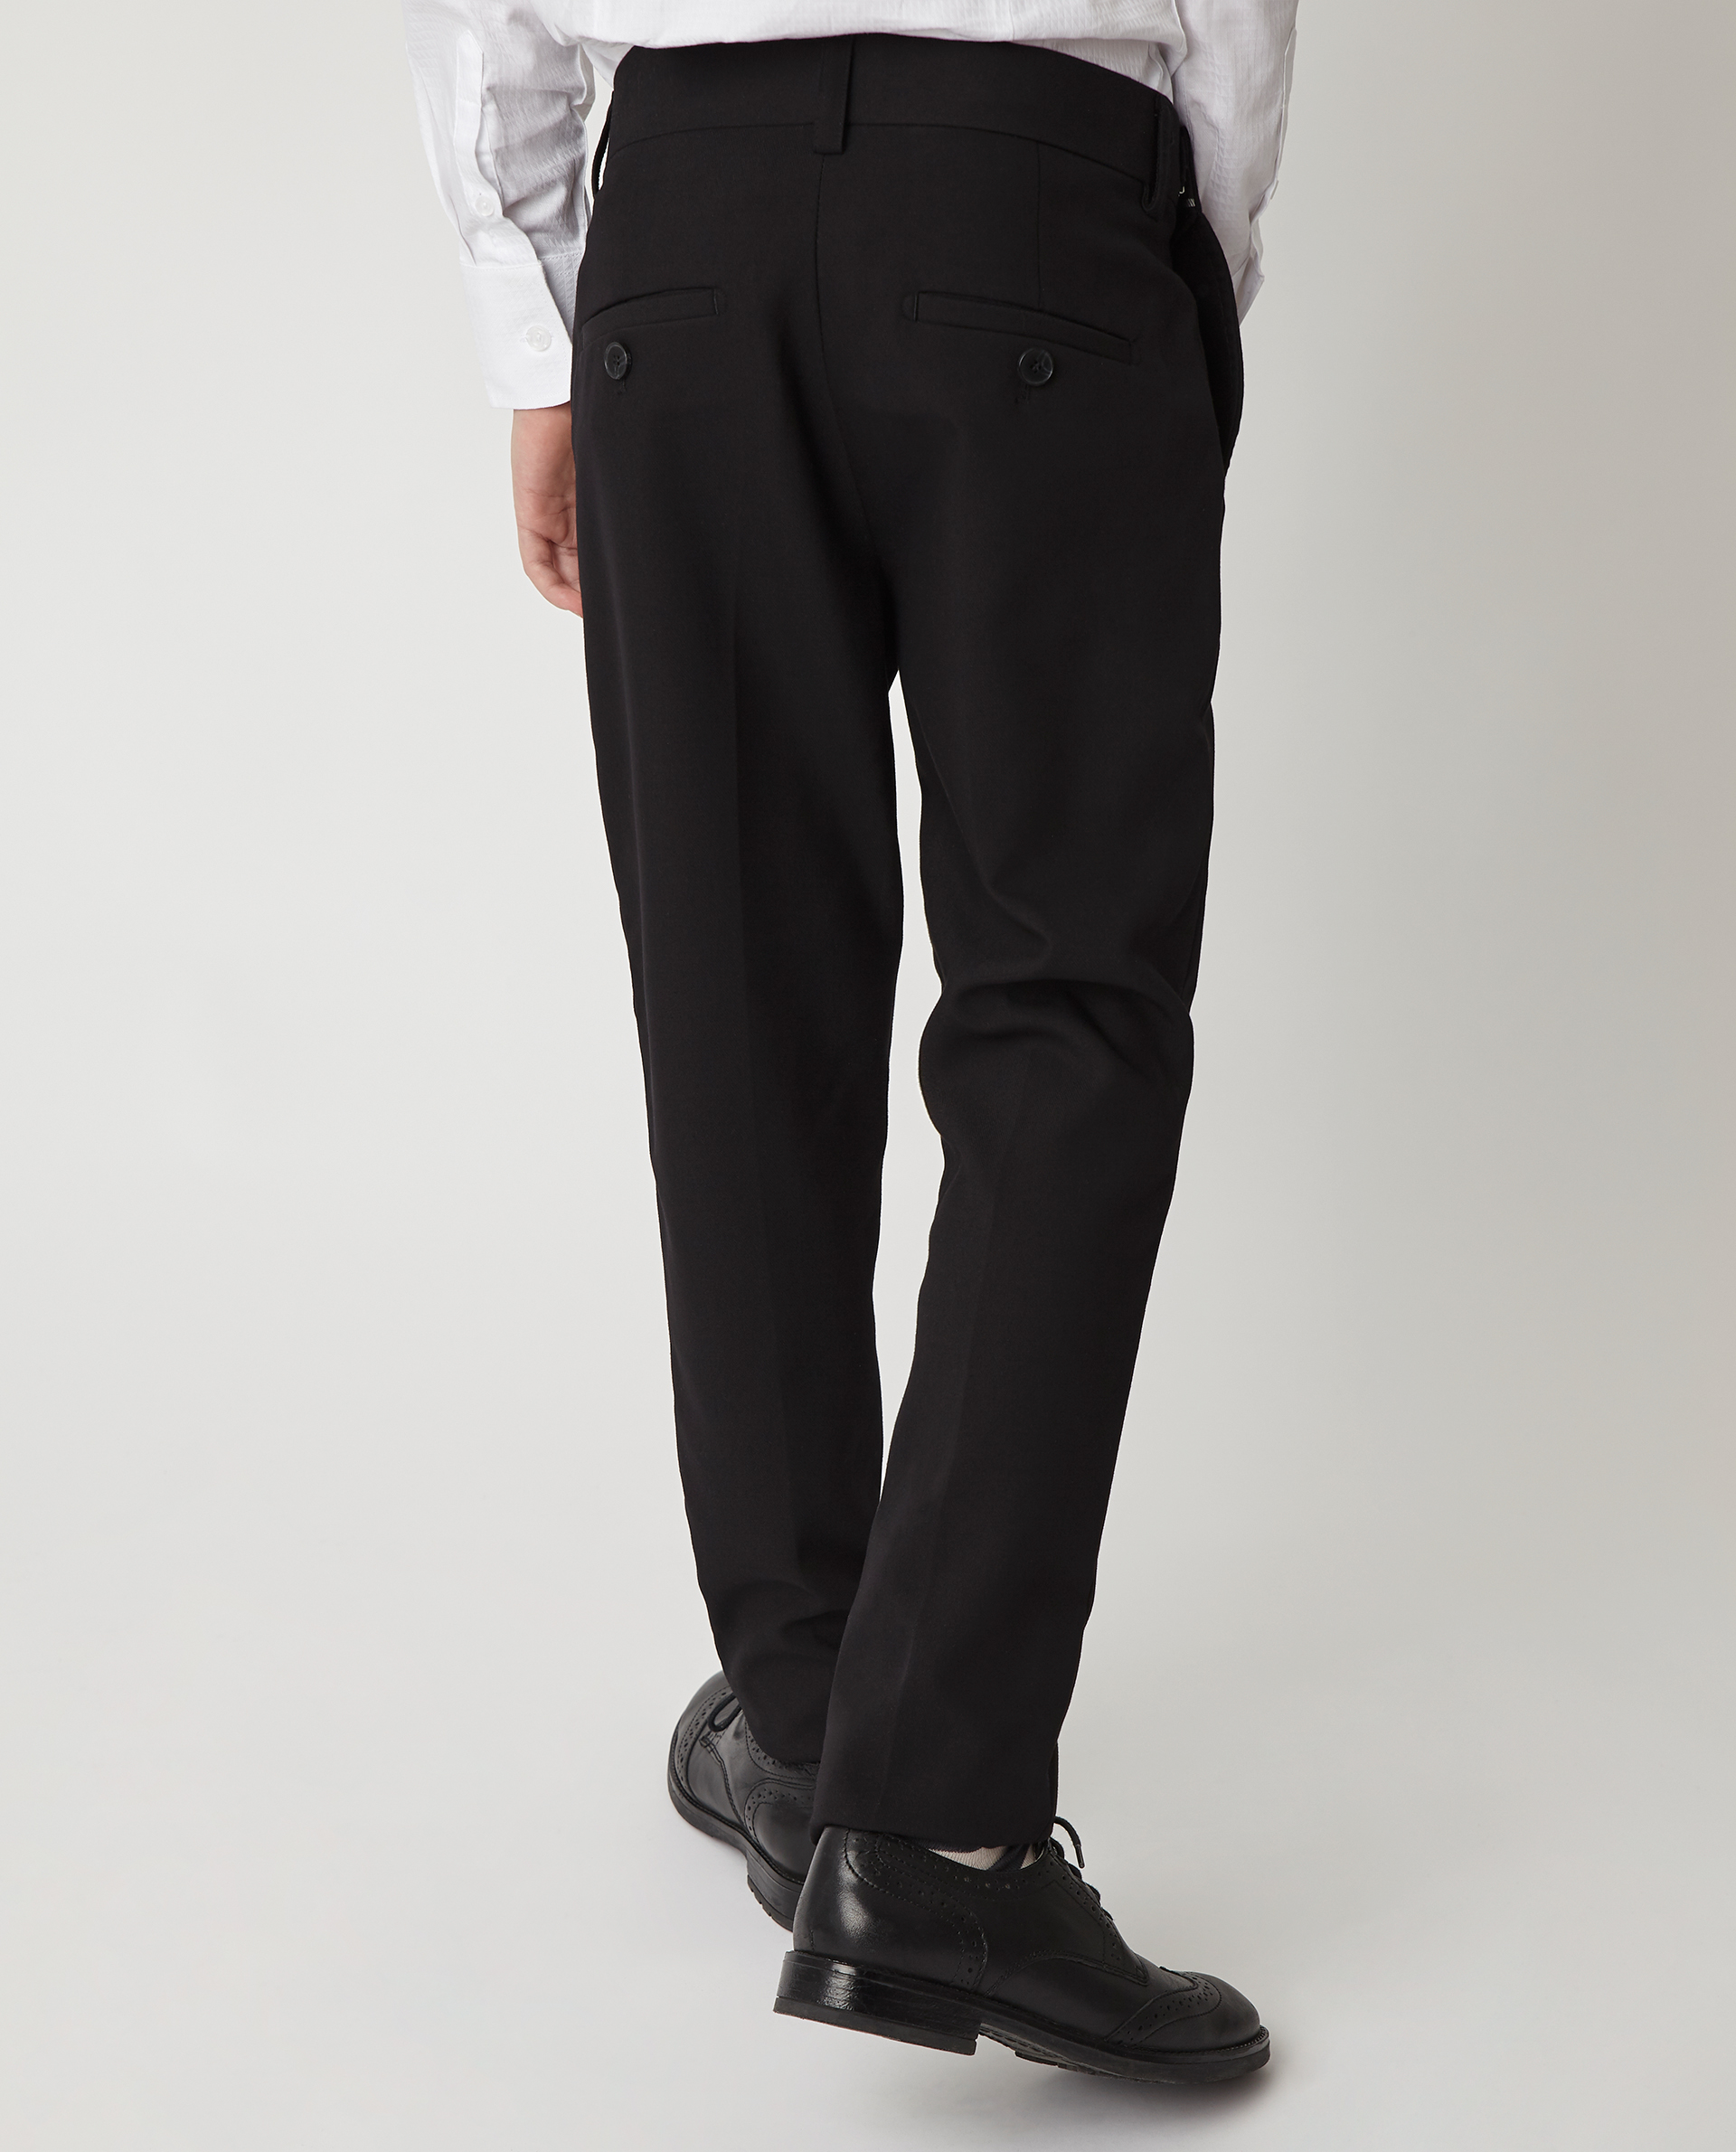 Черные узкие брюки Gulliver 220GSBC6304, размер 140, цвет черный slim / узкие - фото 2